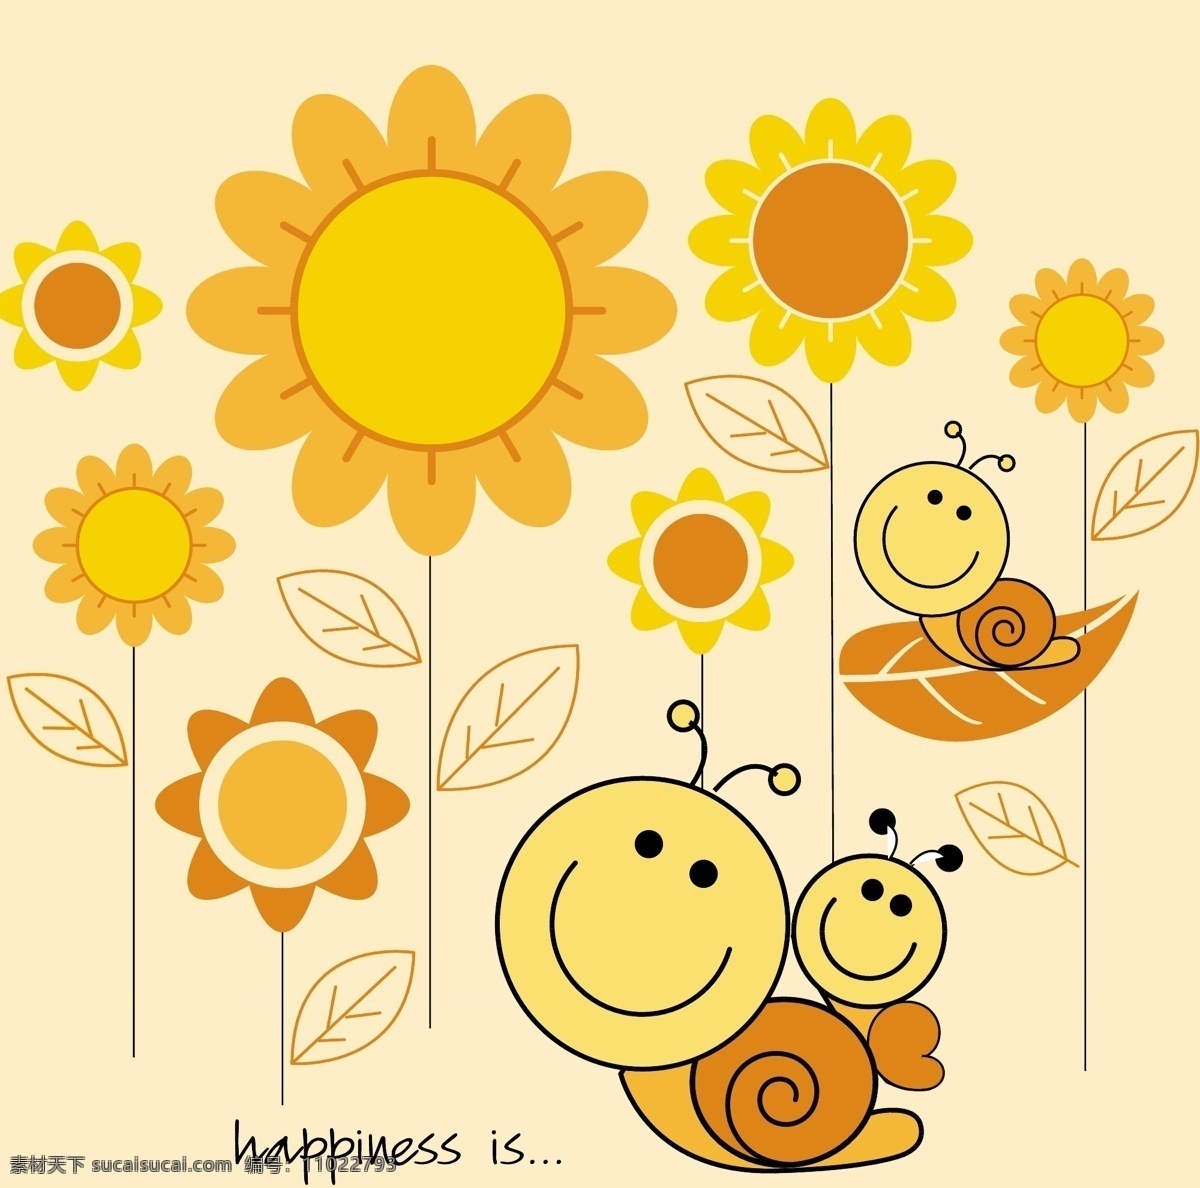 蜗牛 幸福 生活 幸福的蜗牛 蜗牛一家 向日葵 卡通形象 童装图案 手绘插画 底纹背景 底纹边框 矢量